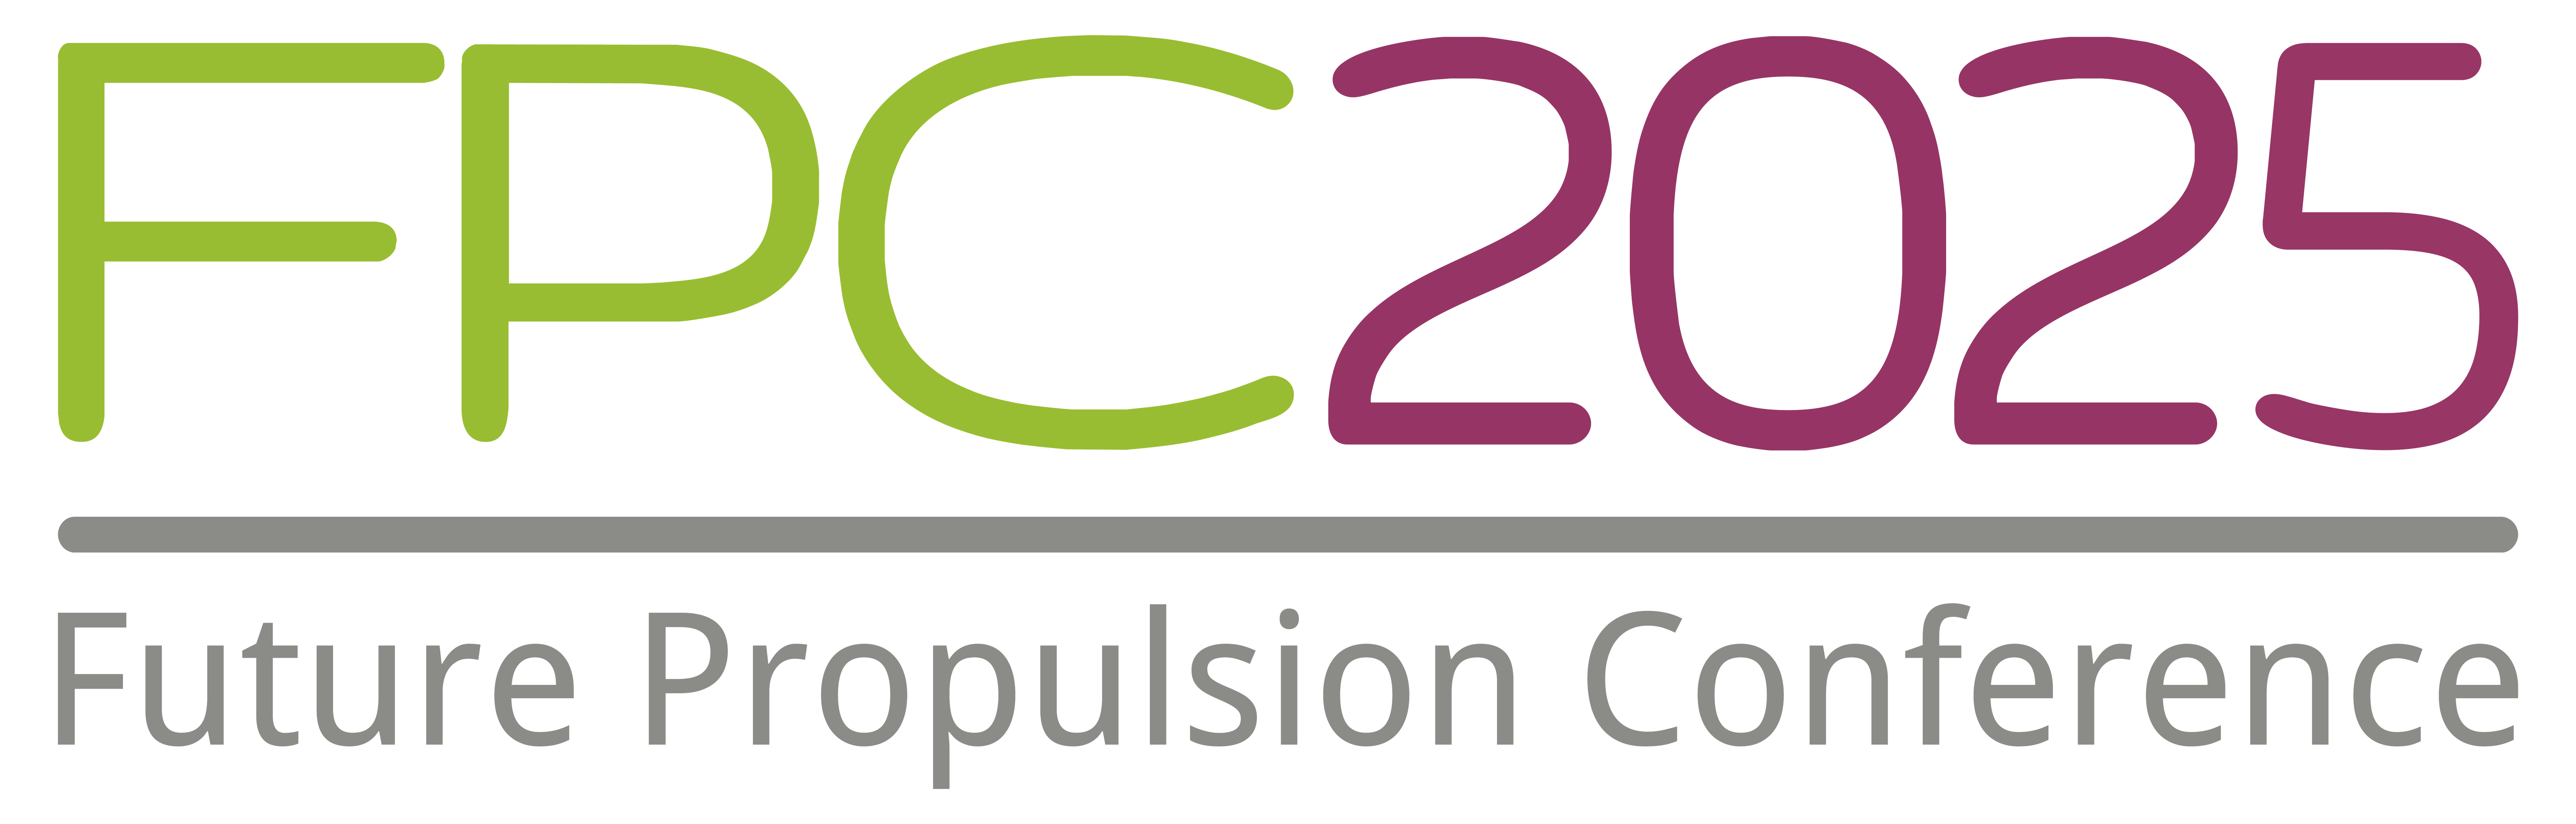 Future Propulsion Conference 2025